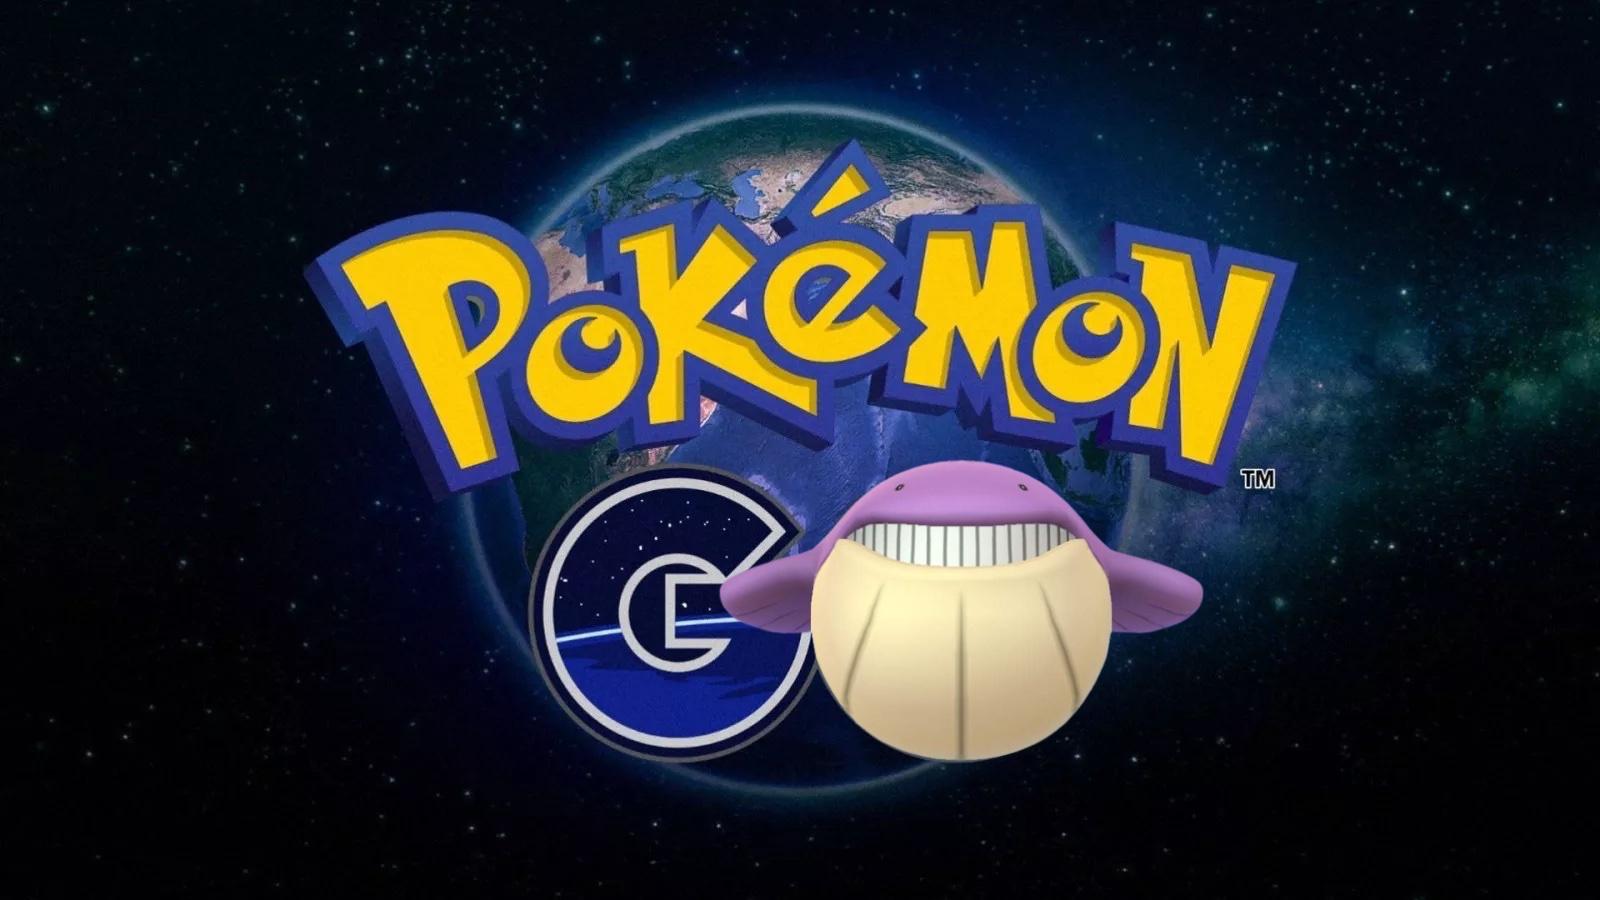 Pokemon Go shiny egg